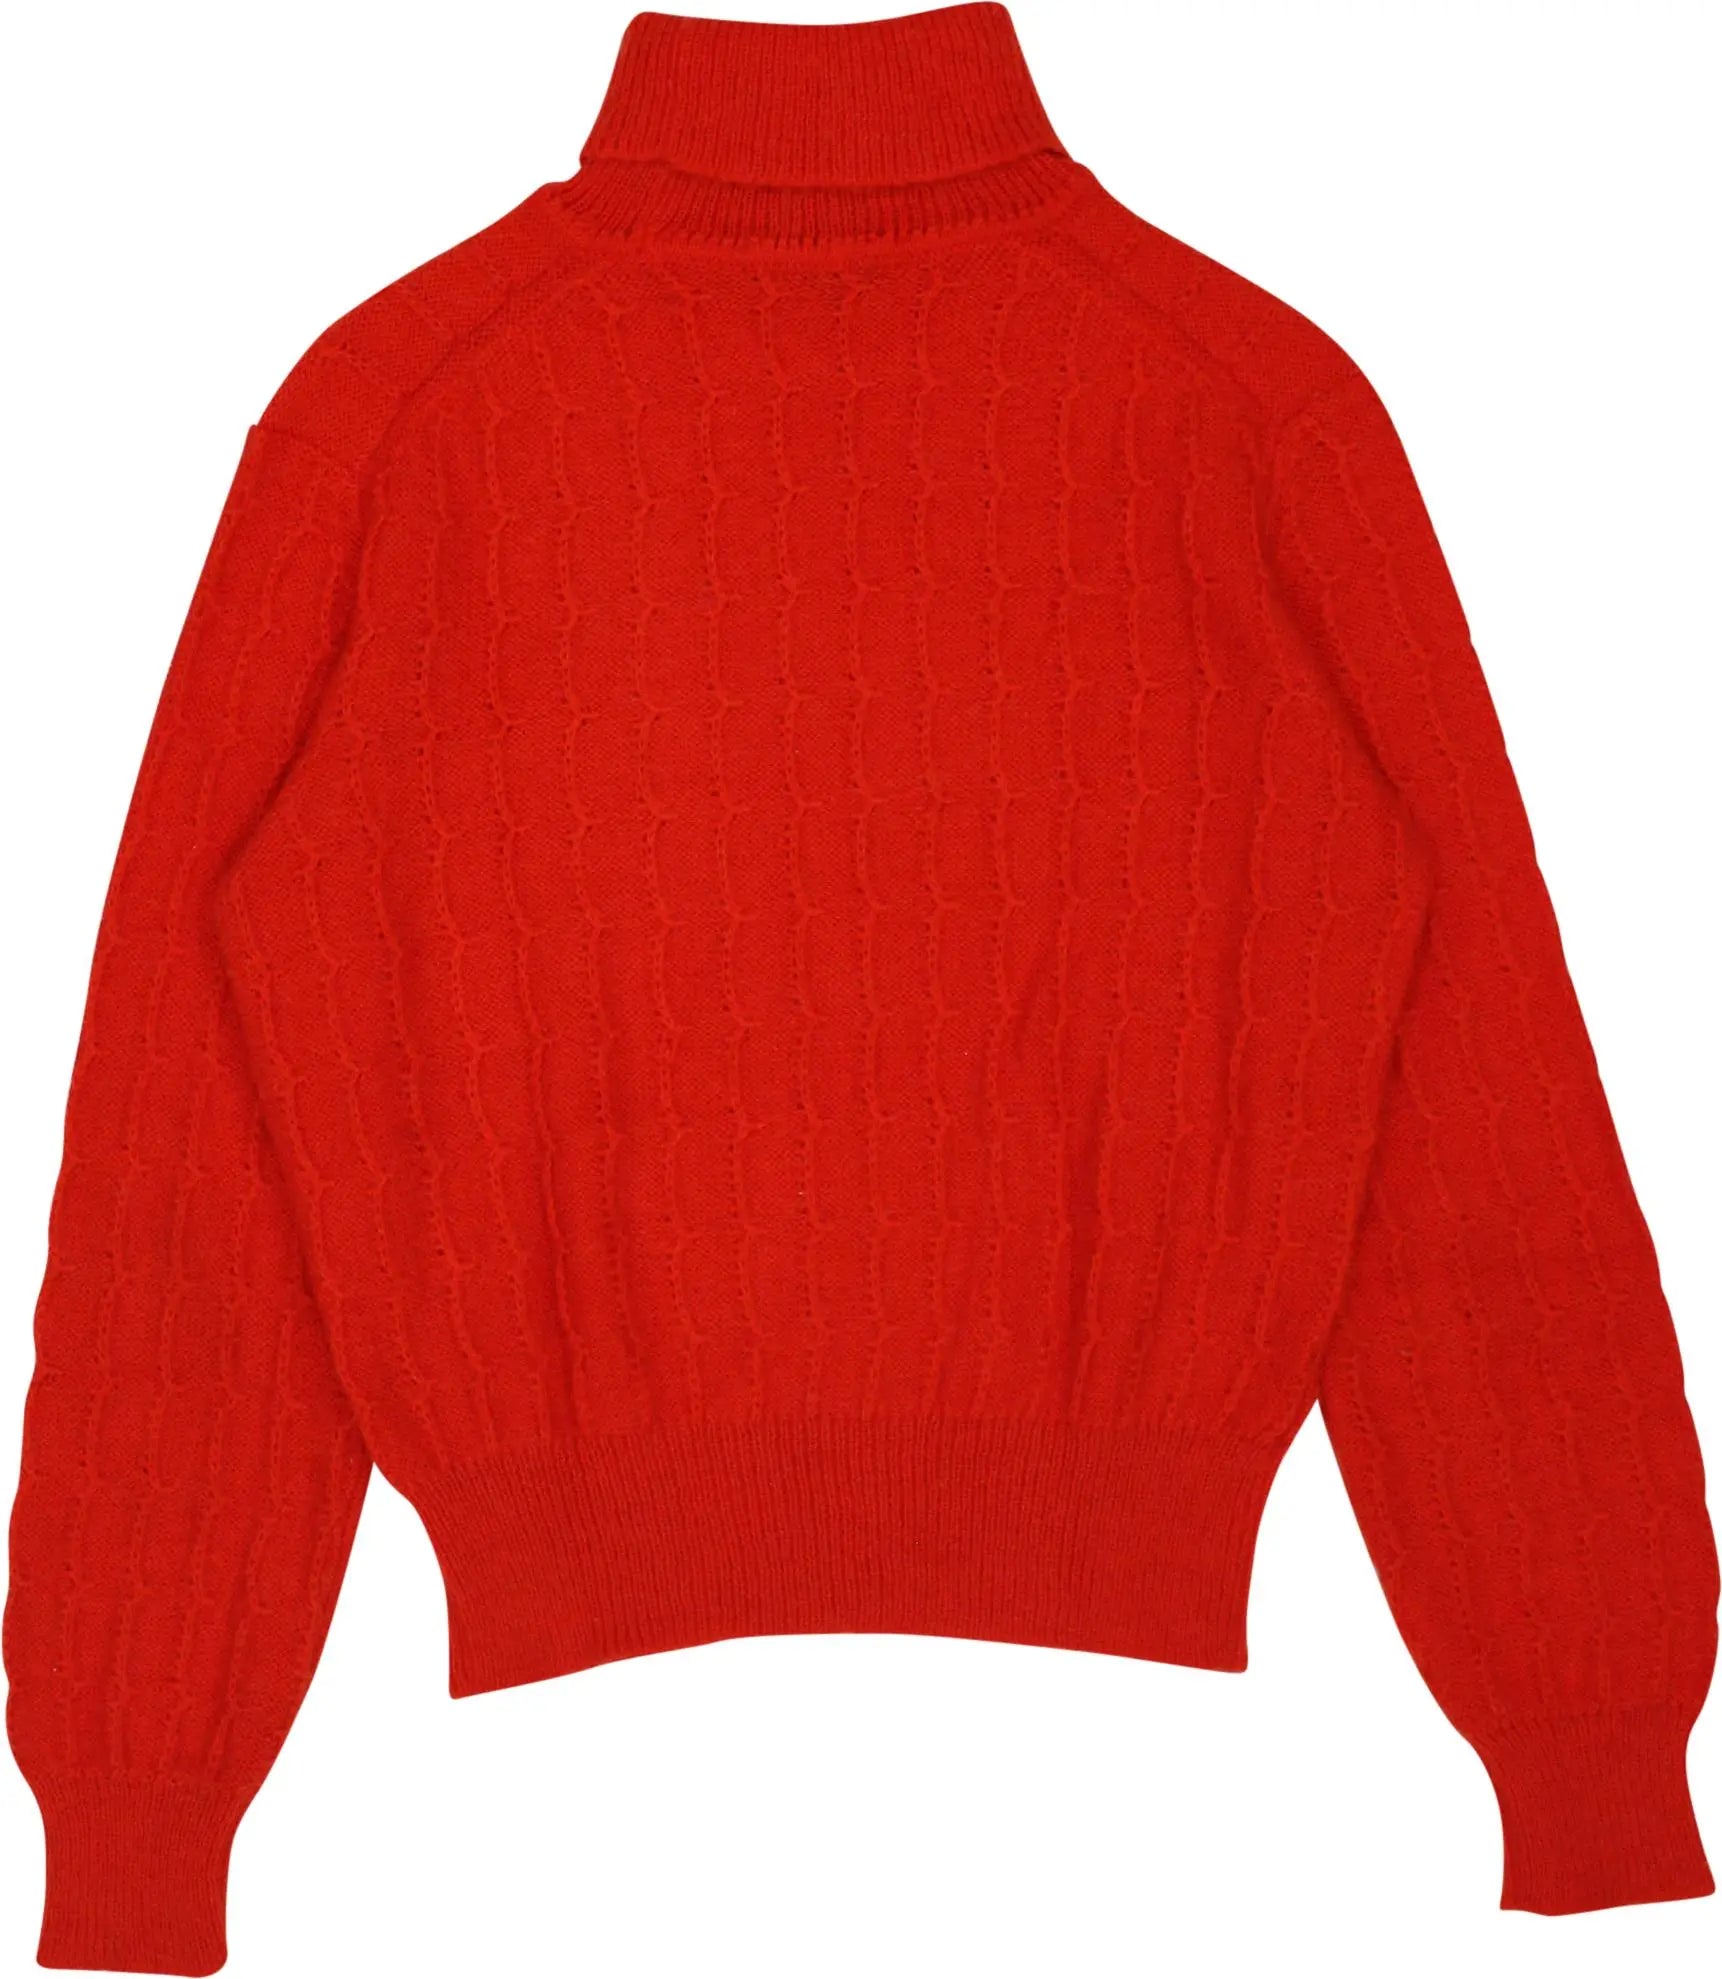 Rodes - Knitted Orange Turtleneck Jumper- ThriftTale.com - Vintage and second handclothing